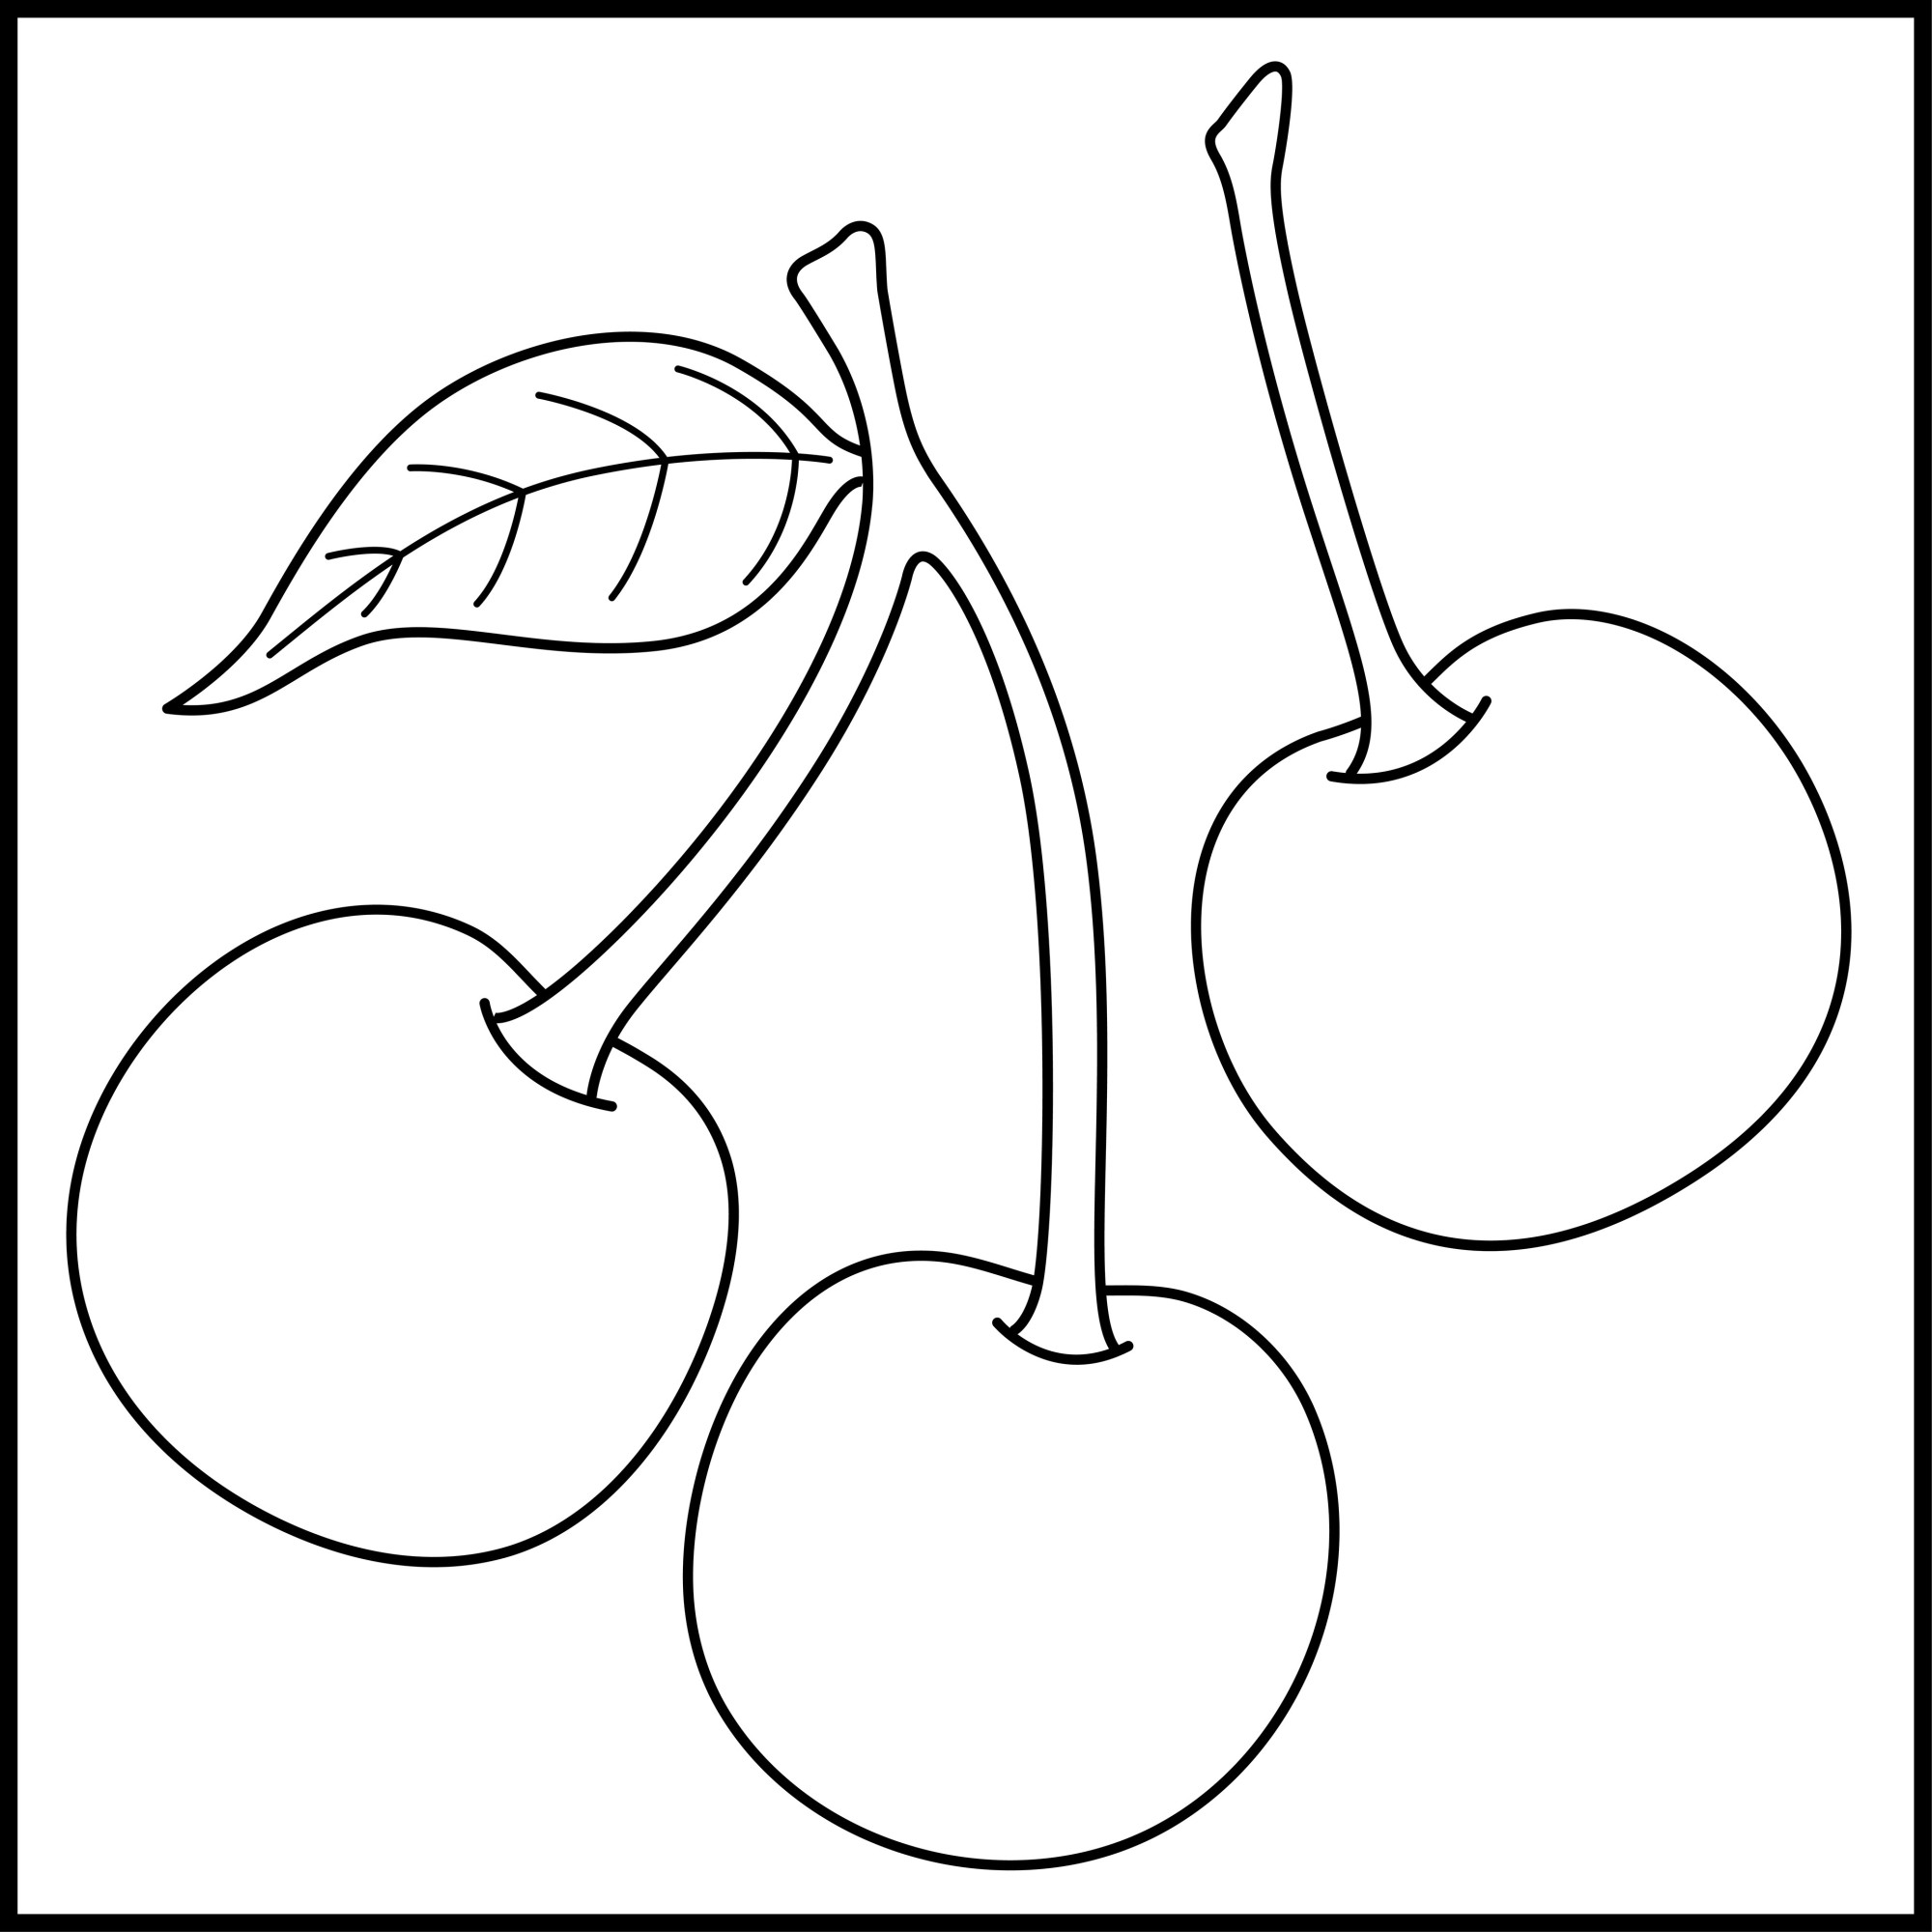 Раскраска для детей: три ягоды вишни